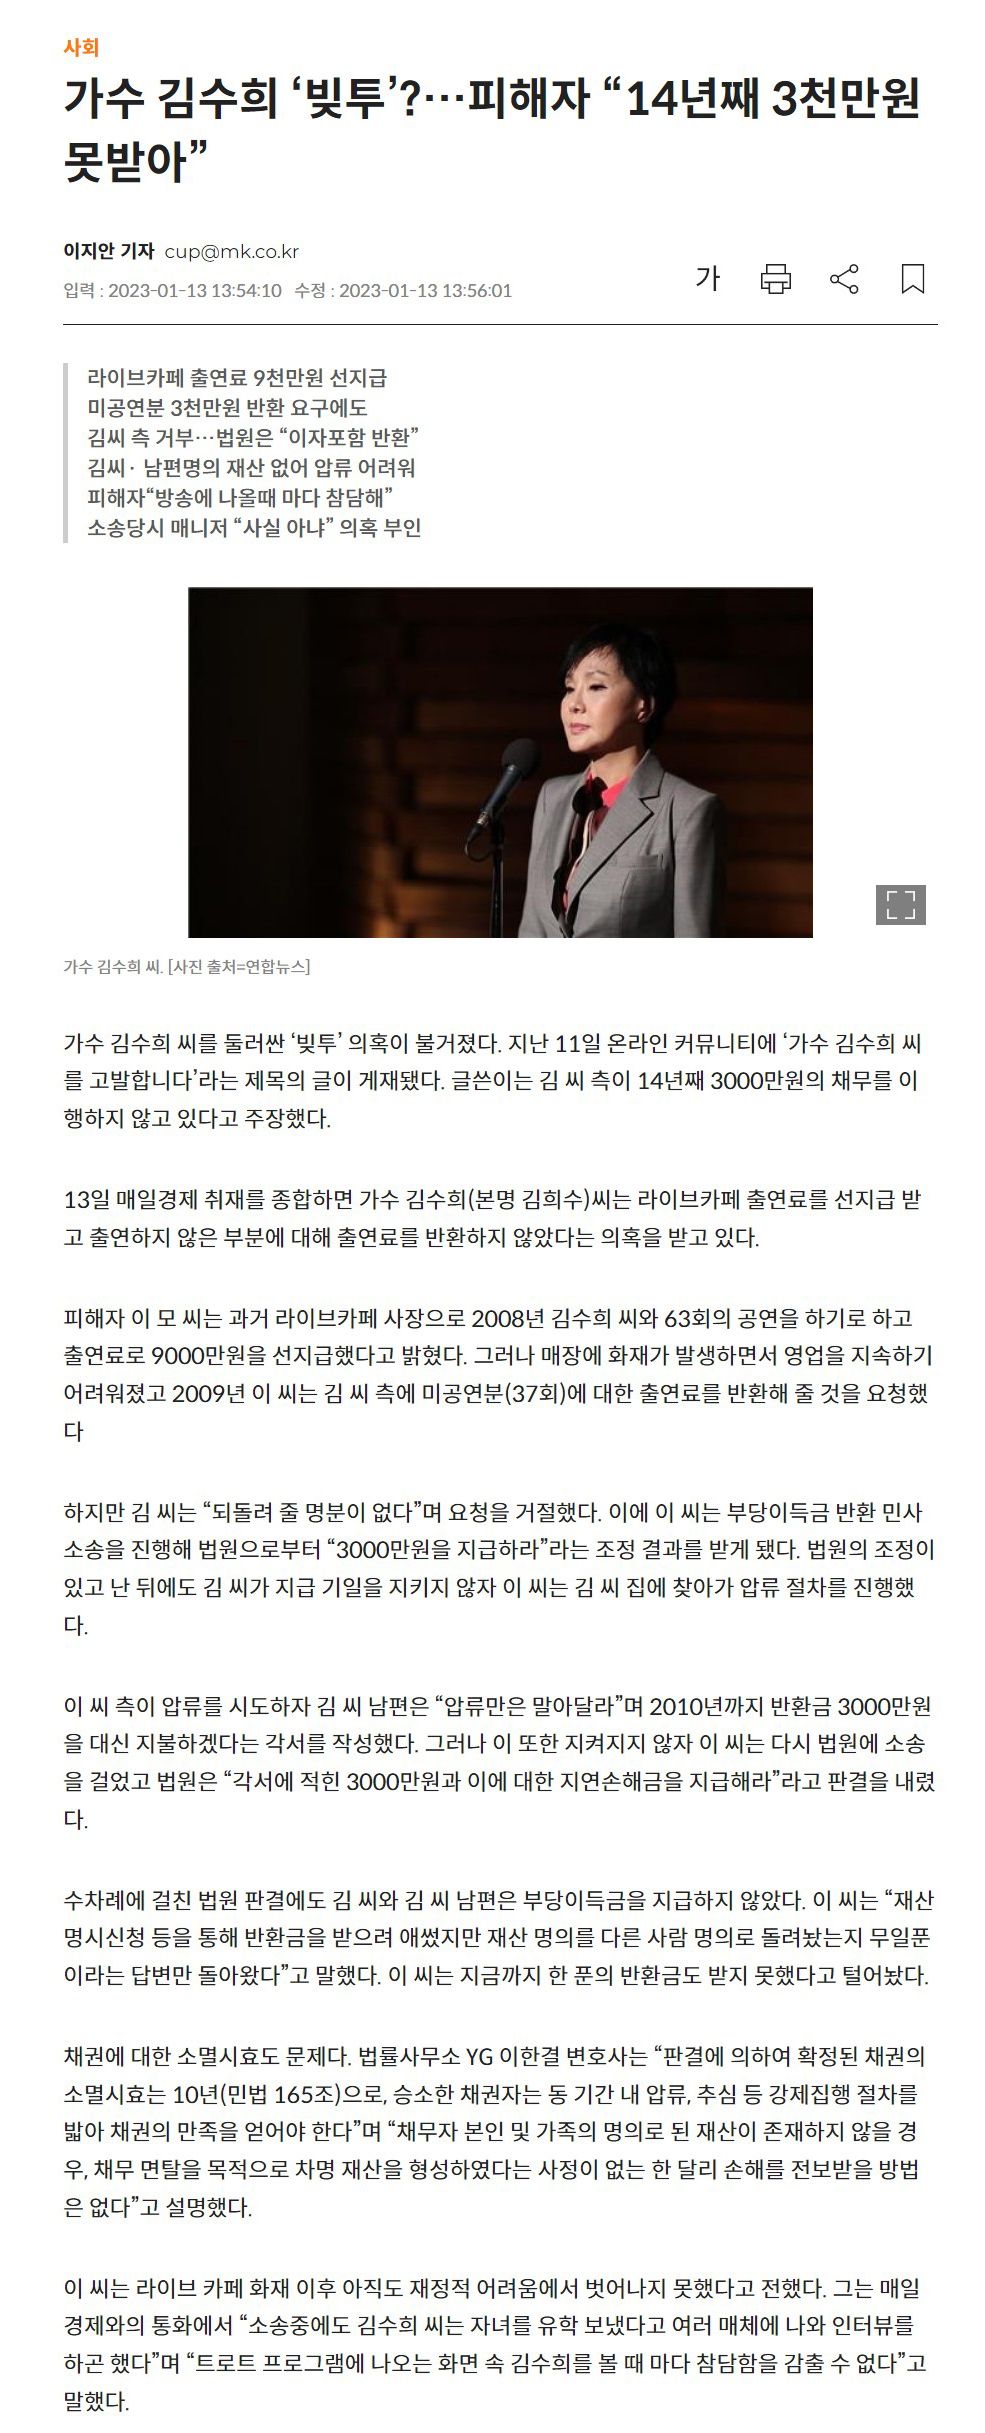 [펌] 가수 김수희 씨도 빚투가 터졌네요...